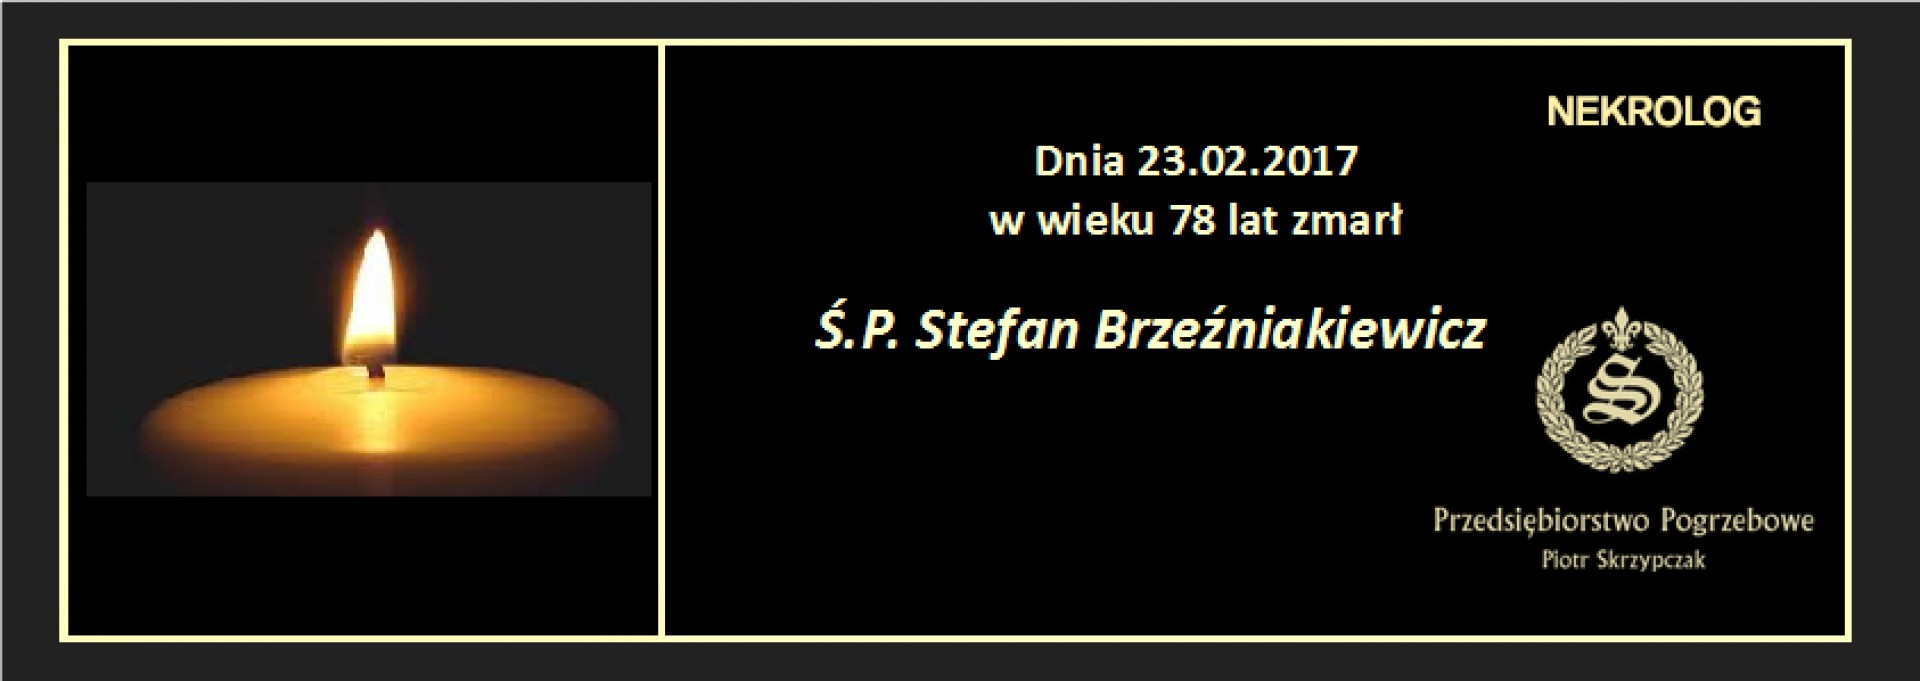 Ś.P. Stefan Brzeźniakiewicz